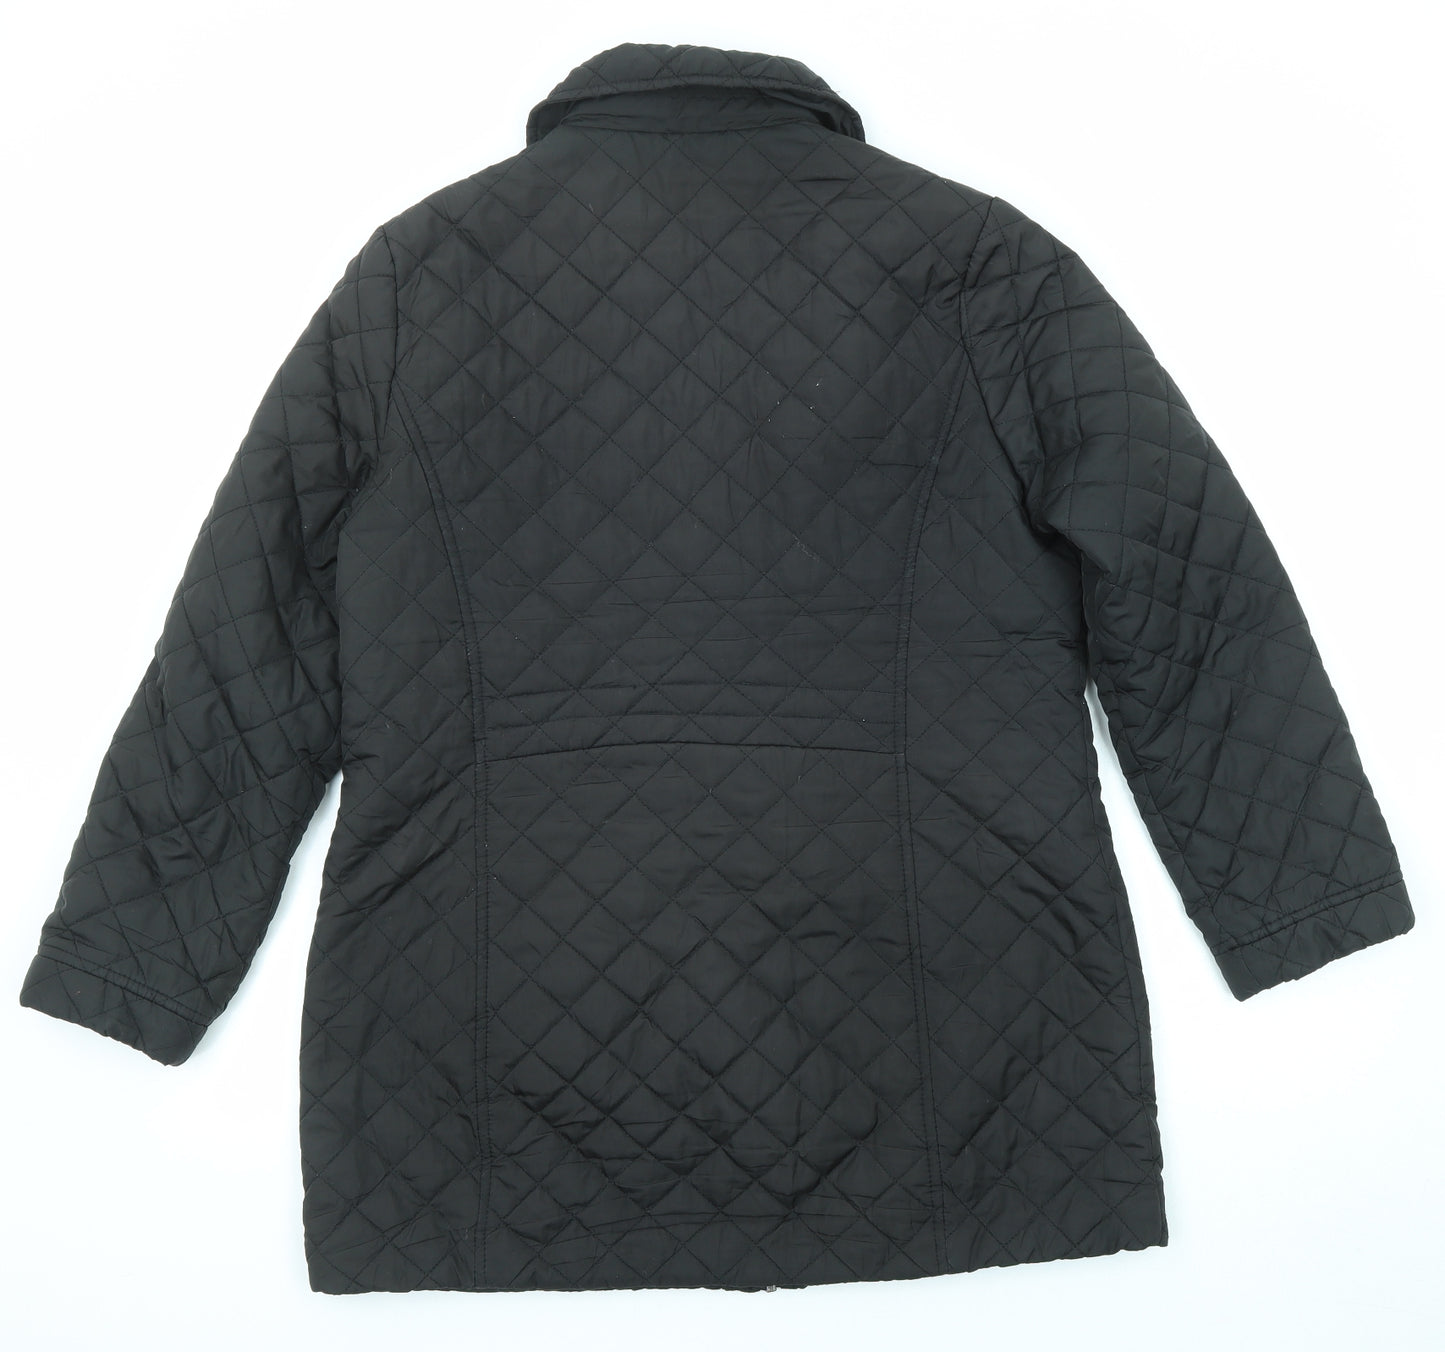 BHS Womens Black Overcoat Coat Size 14 Zip